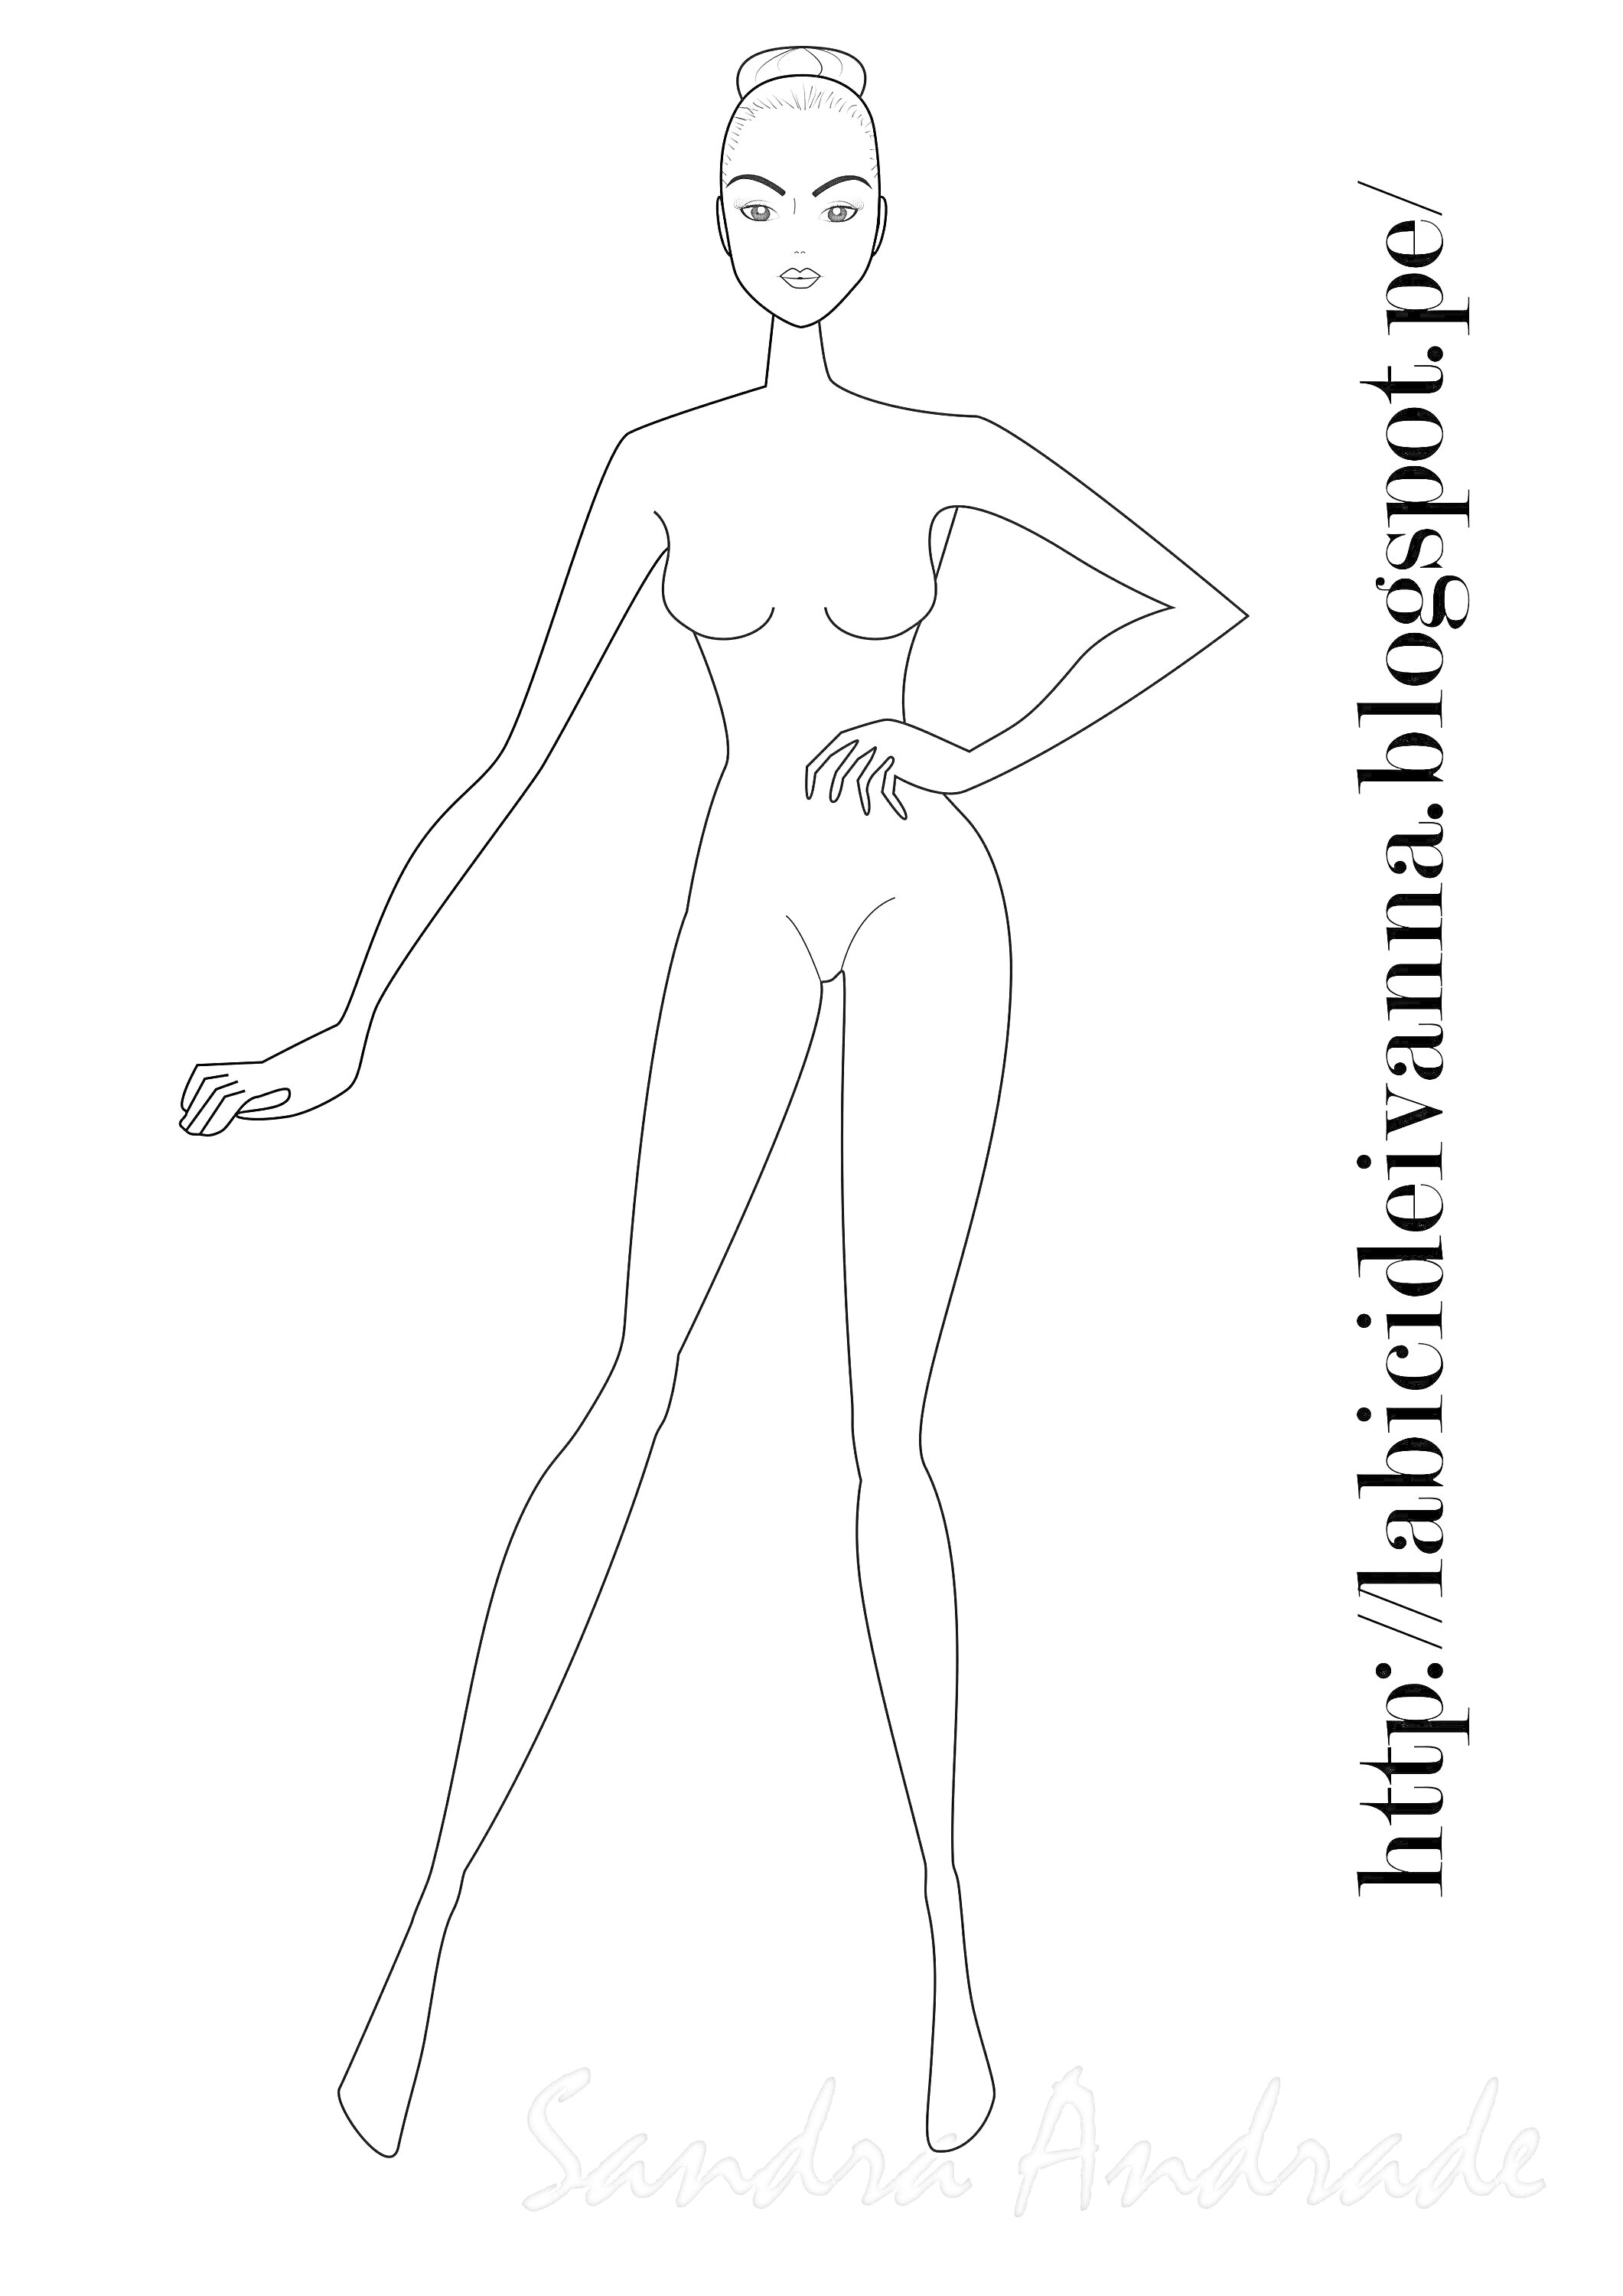 Раскраска Модель девушки для дизайна с надписями и логотипом блога